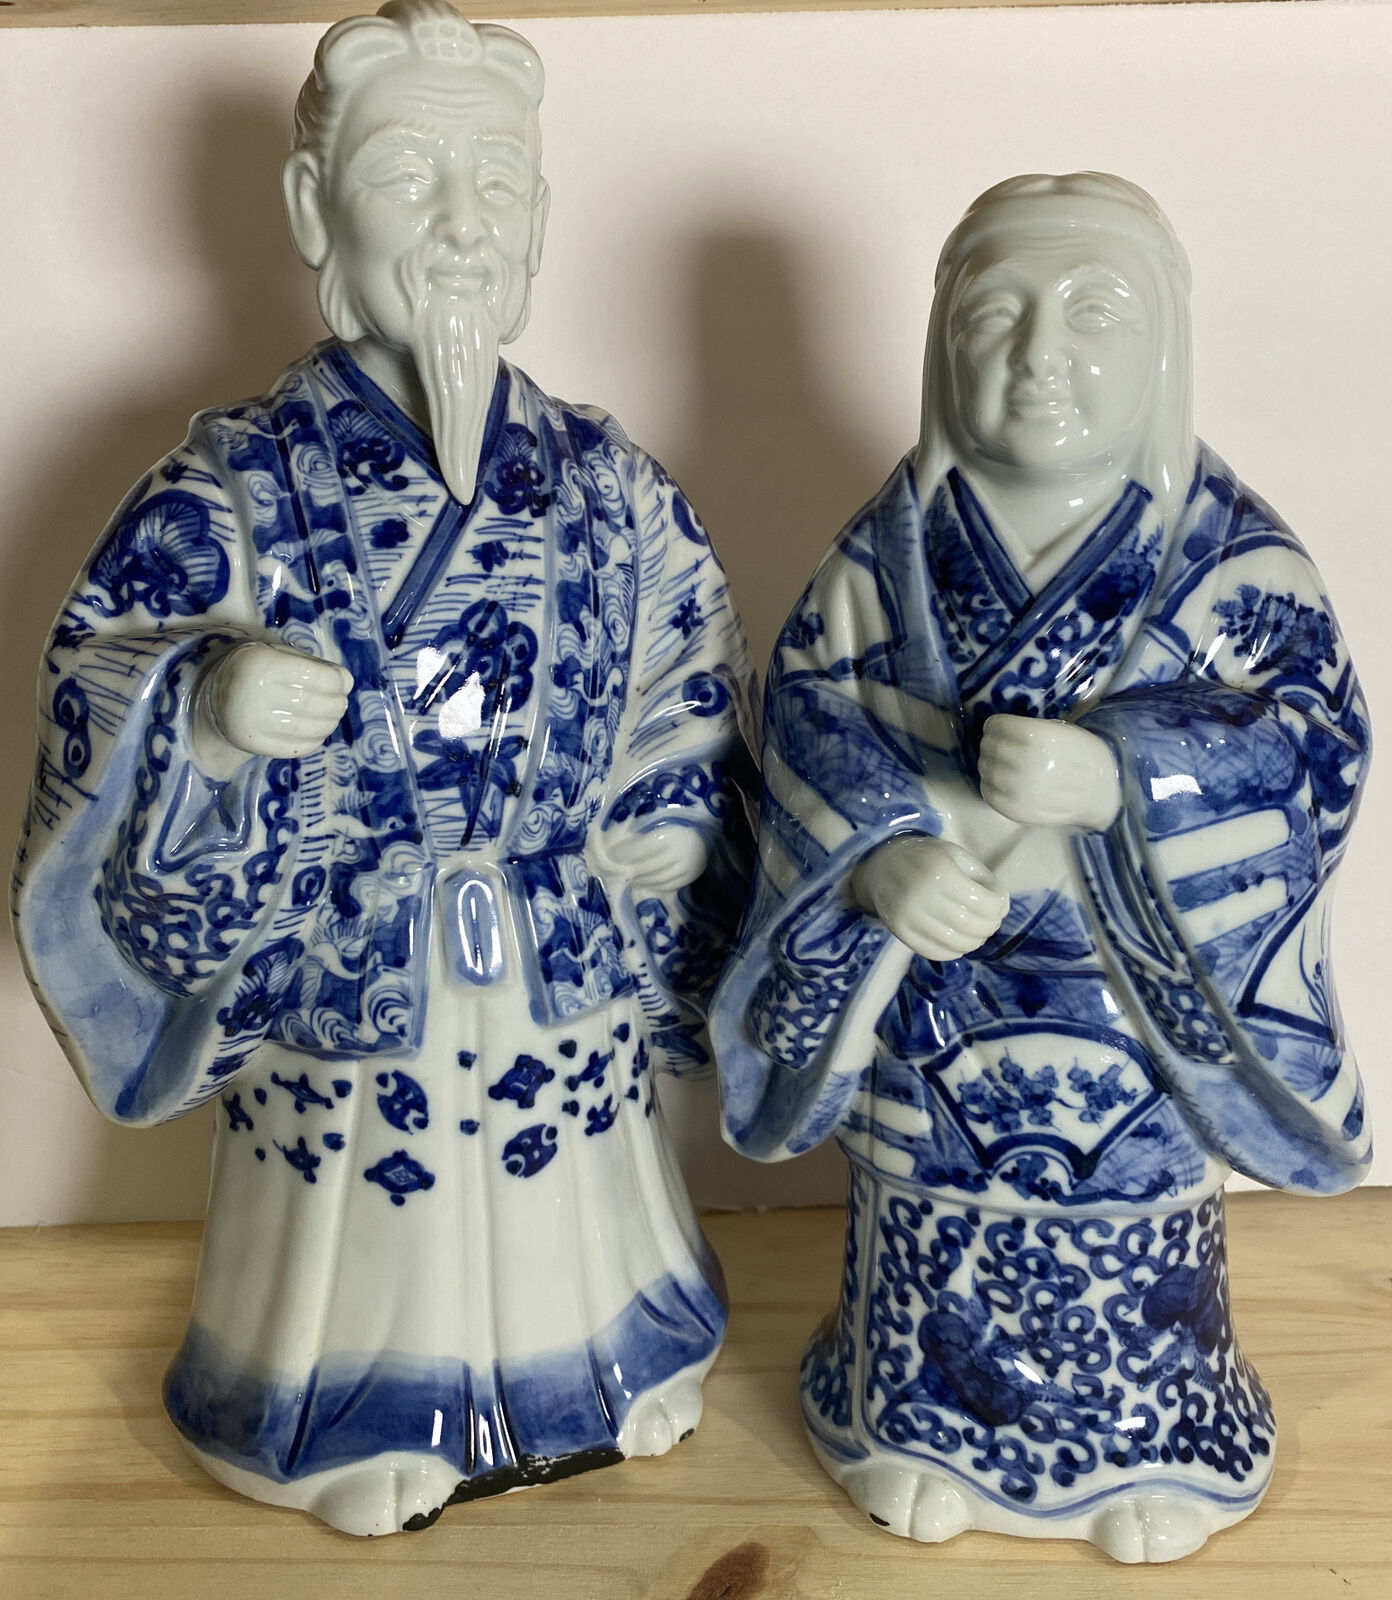 Vintage Pair of Asian Kutani Jurojin Figurines:  12” Male, 10.5” Female